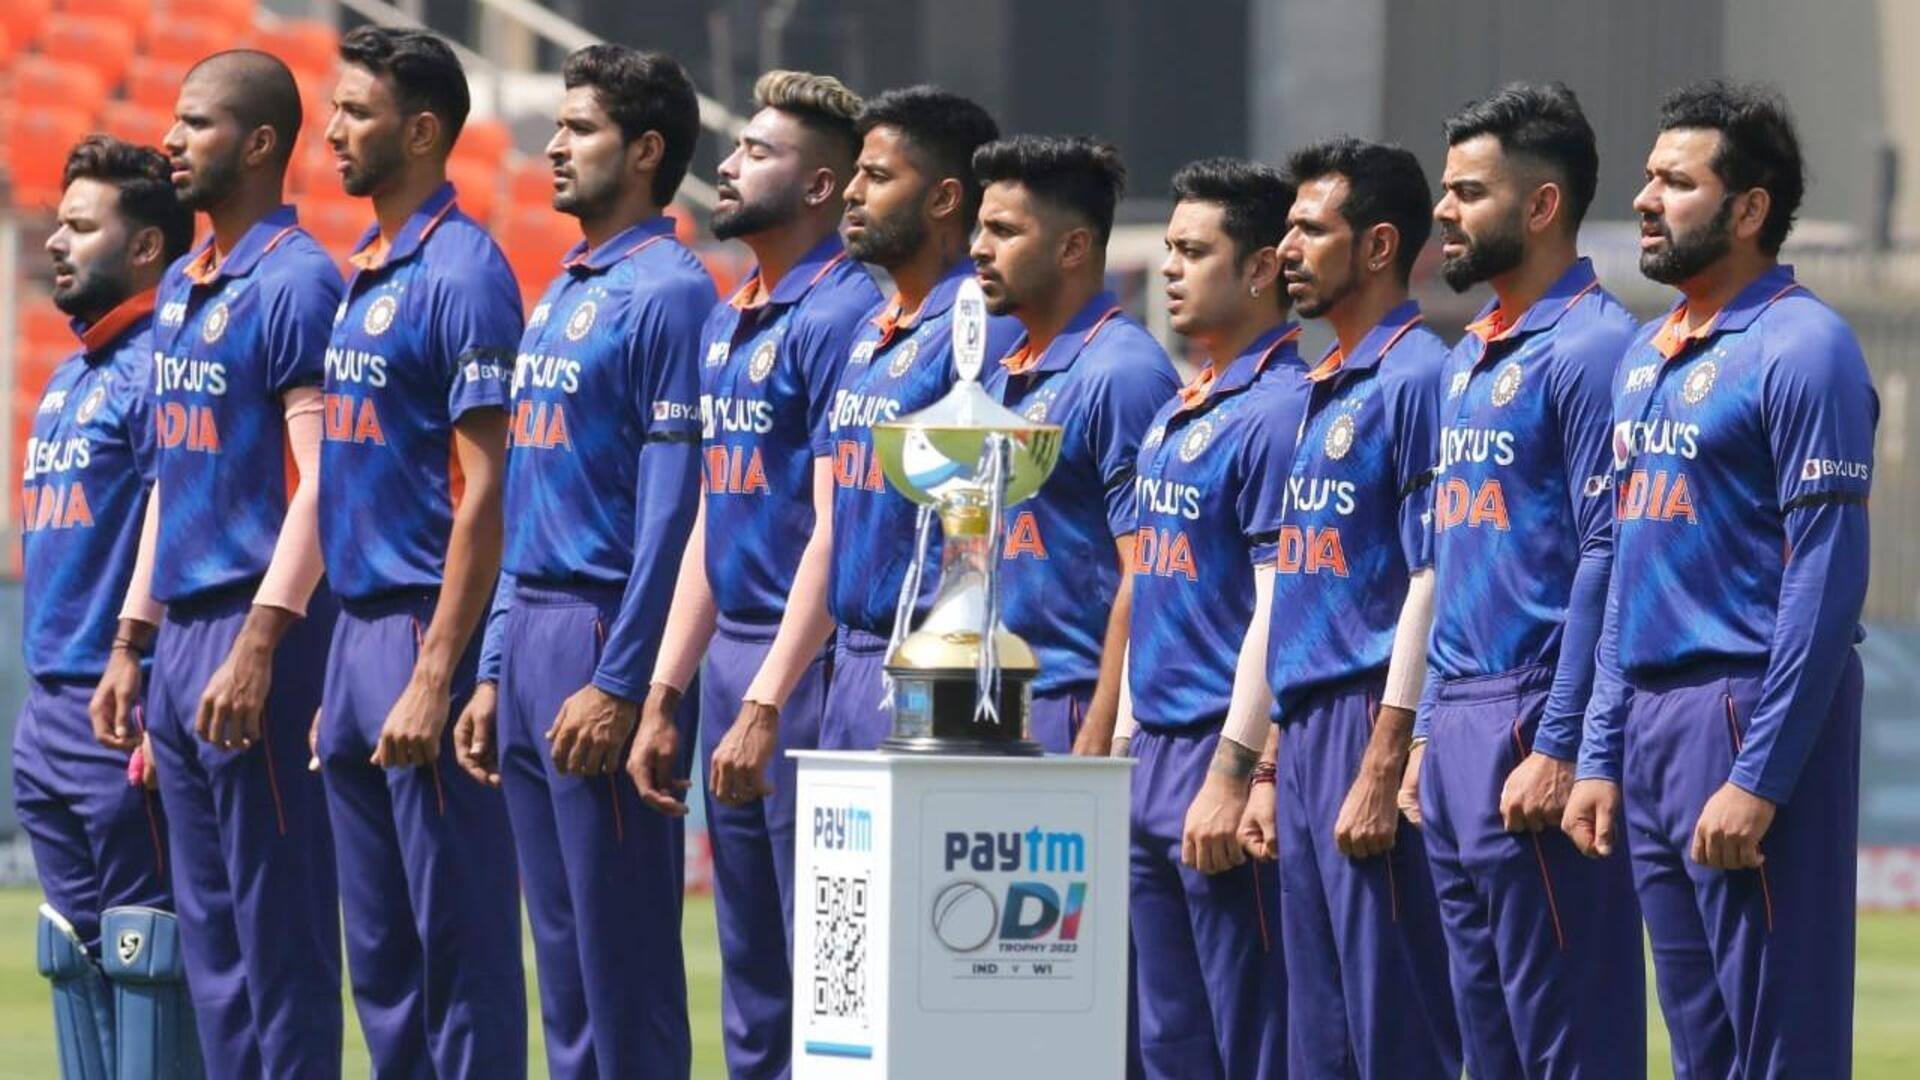 2019 विश्व कप के बाद से भारतीय क्रिकेट टीम का वनडे क्रिकेट में कैसा रहा प्रदर्शन?